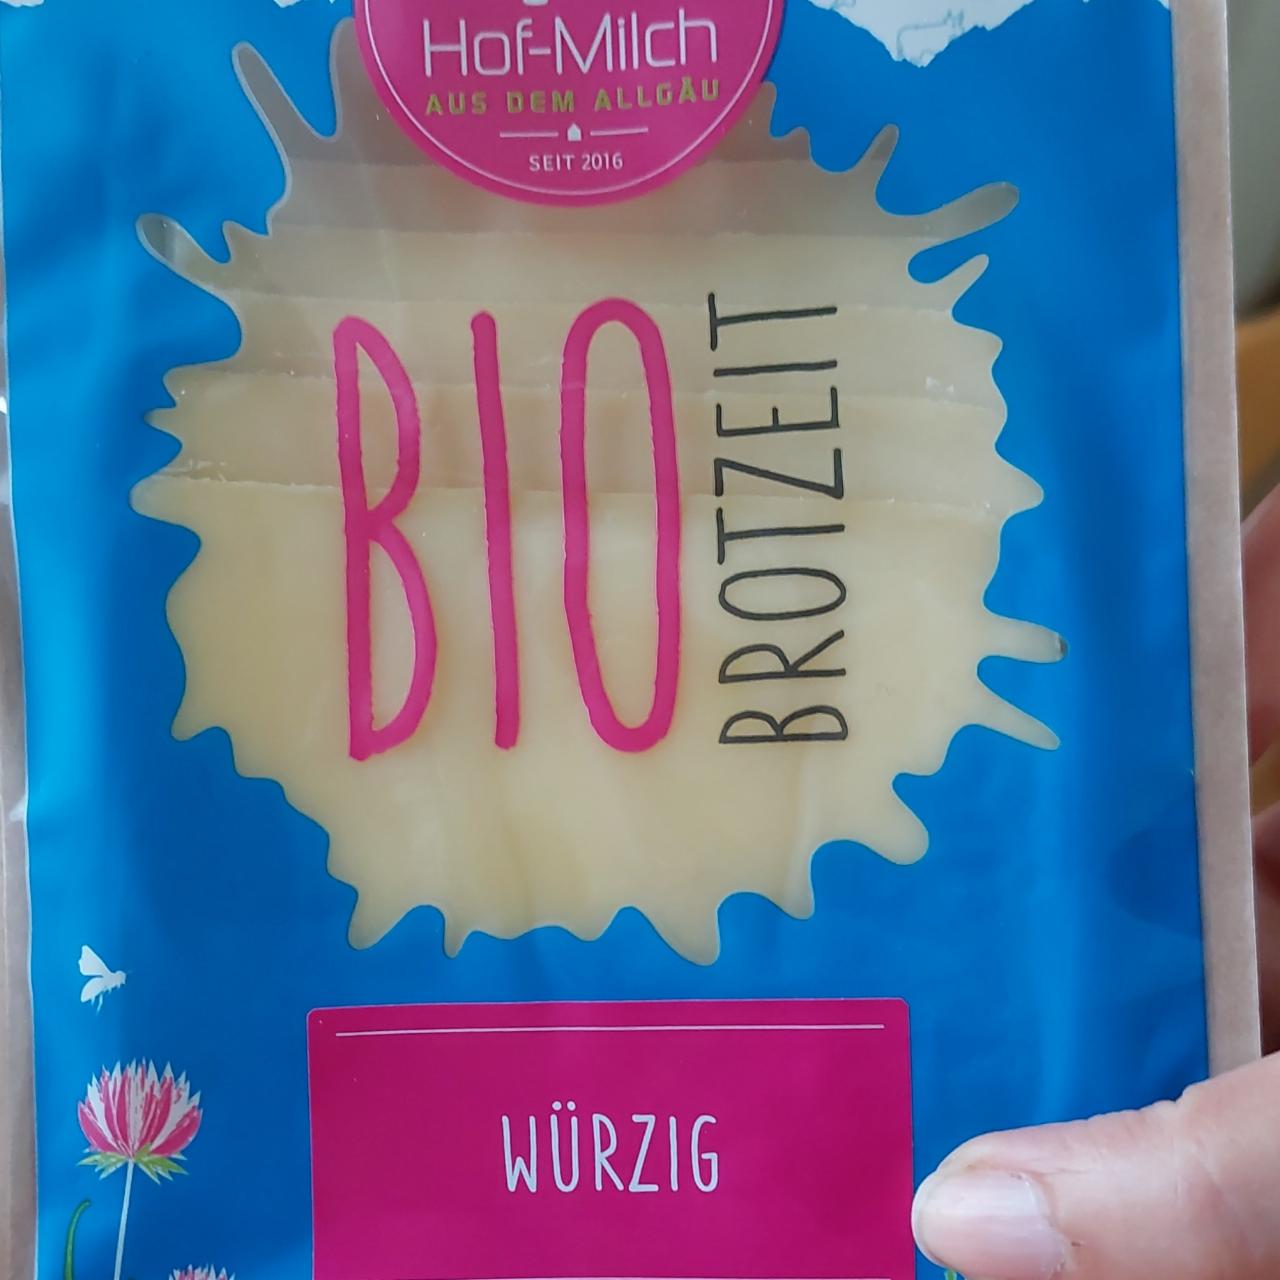 Фото - Bio brotzeit wurzig Hof-Milch